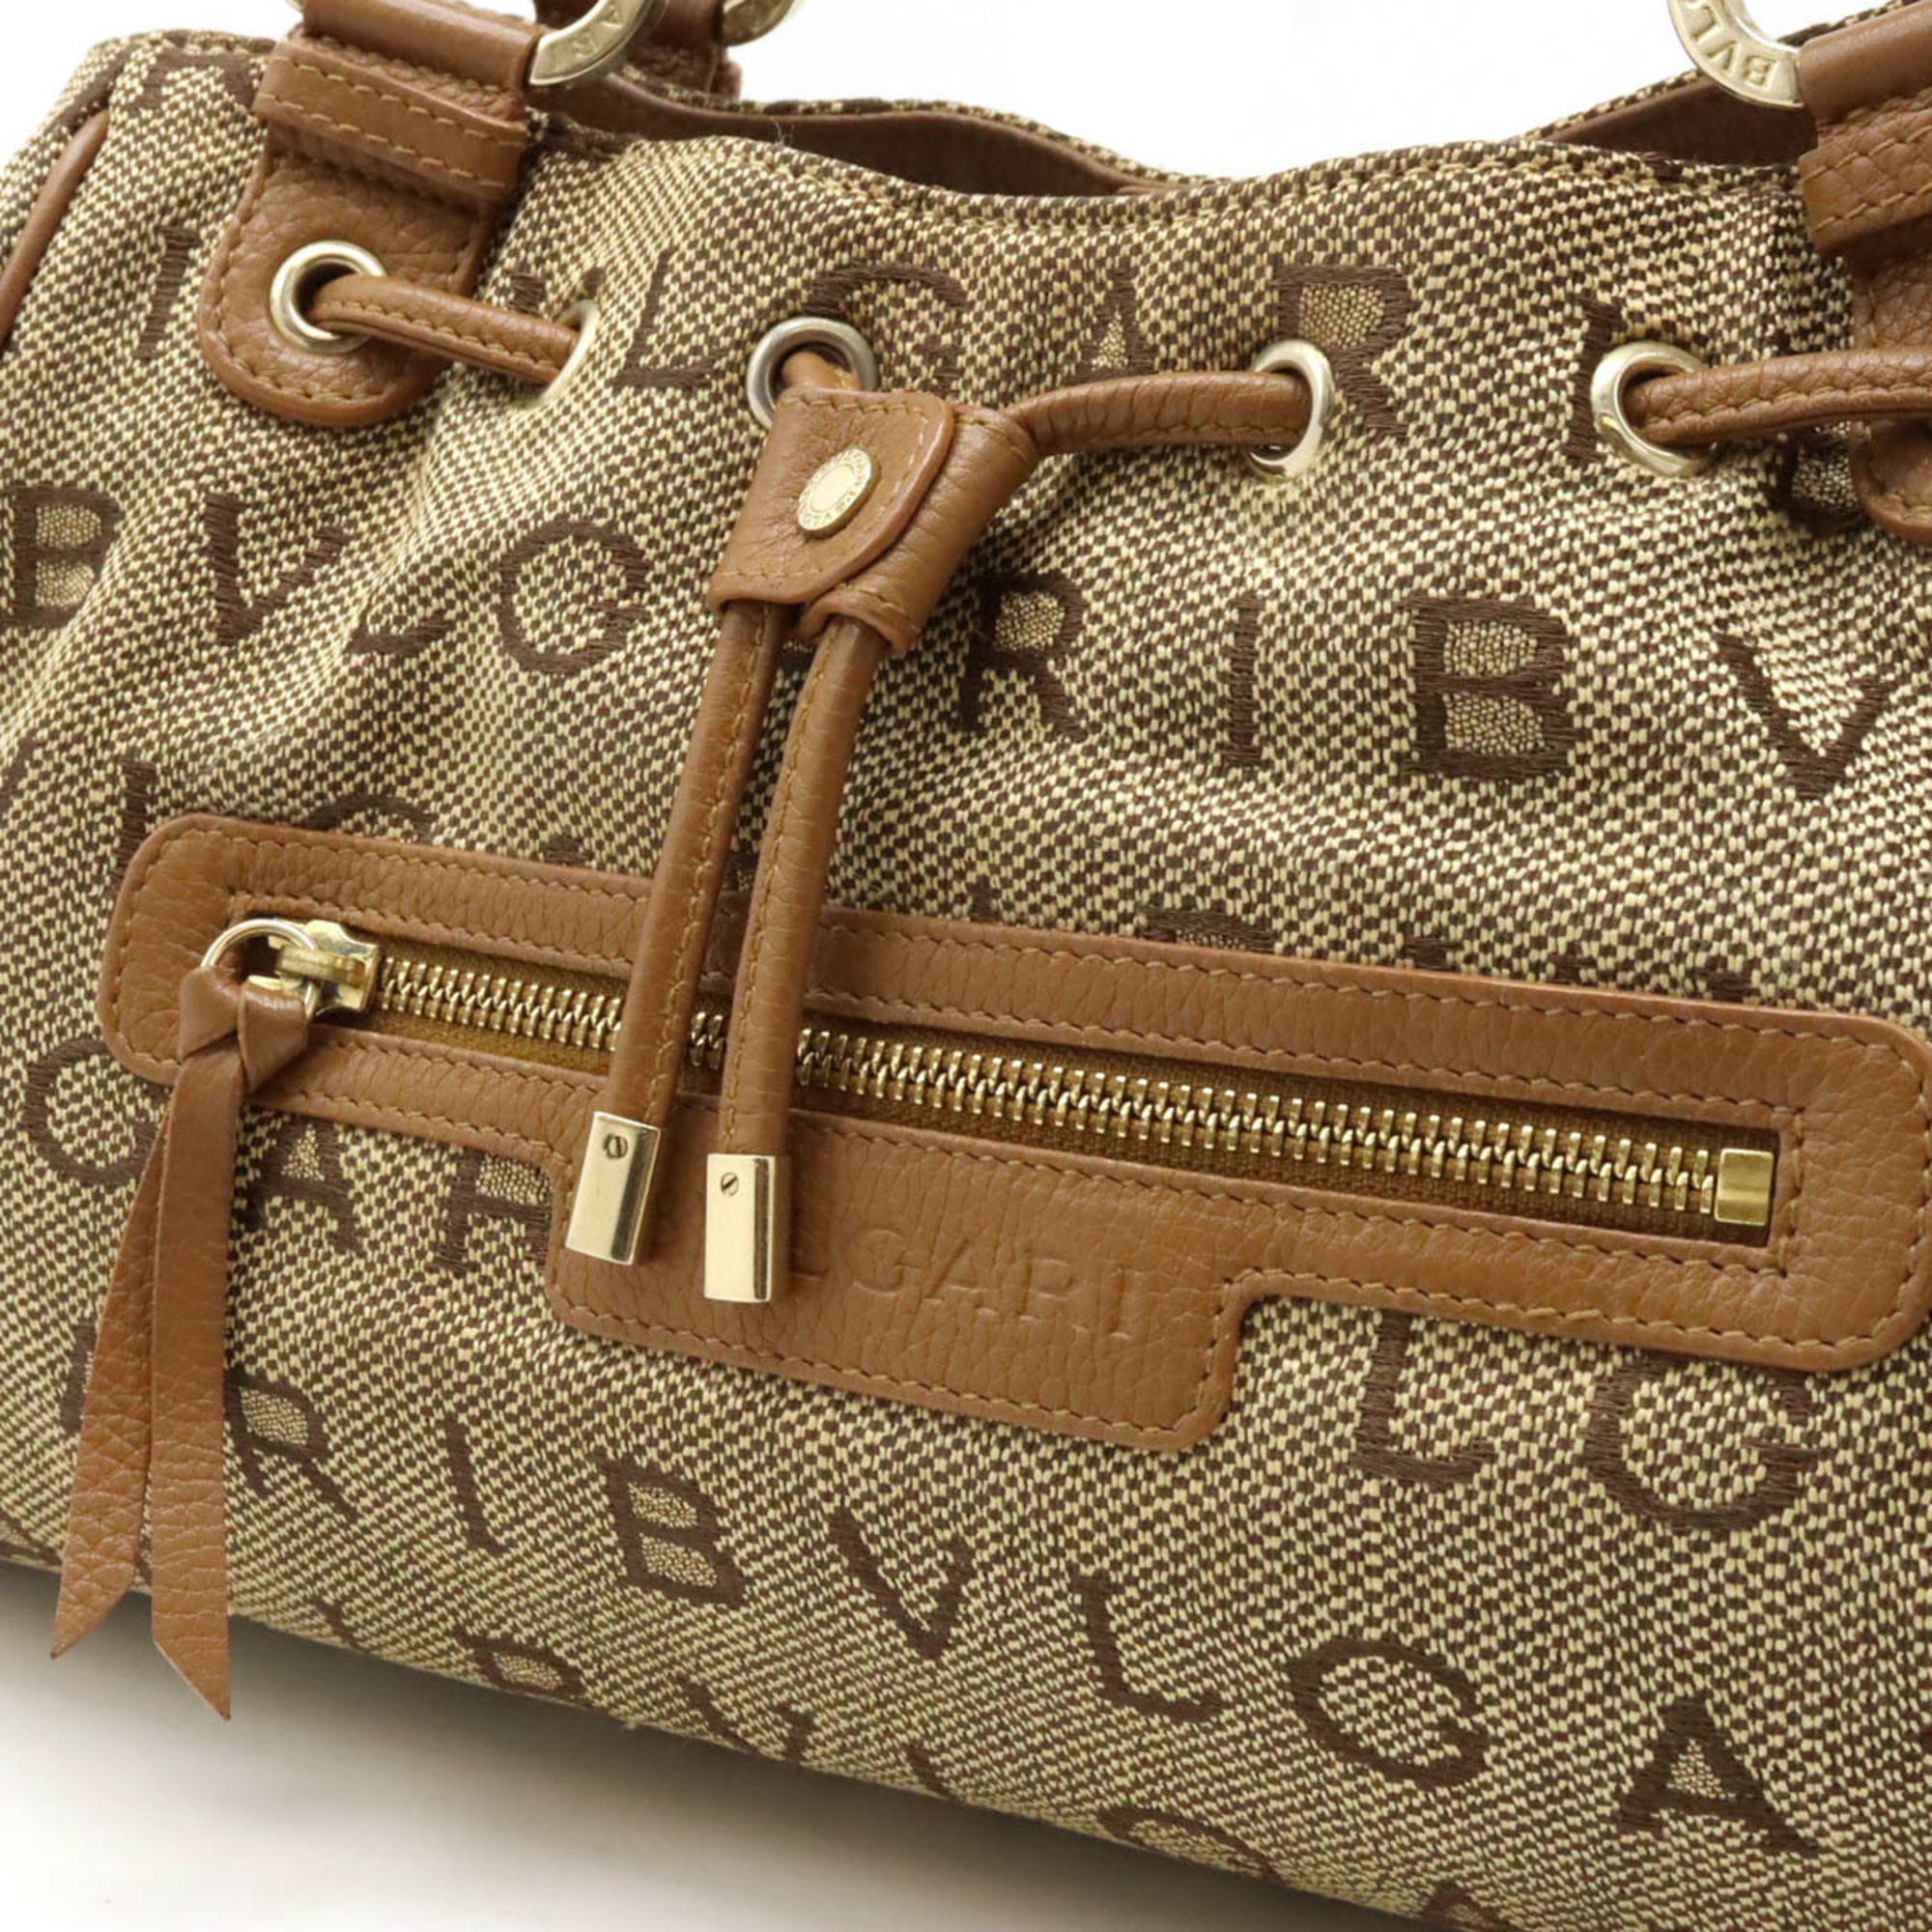 BVLGARI Bvlgari Mania Maxillettare Tote Bag Shoulder Jacquard Canvas Leather Beige Brown